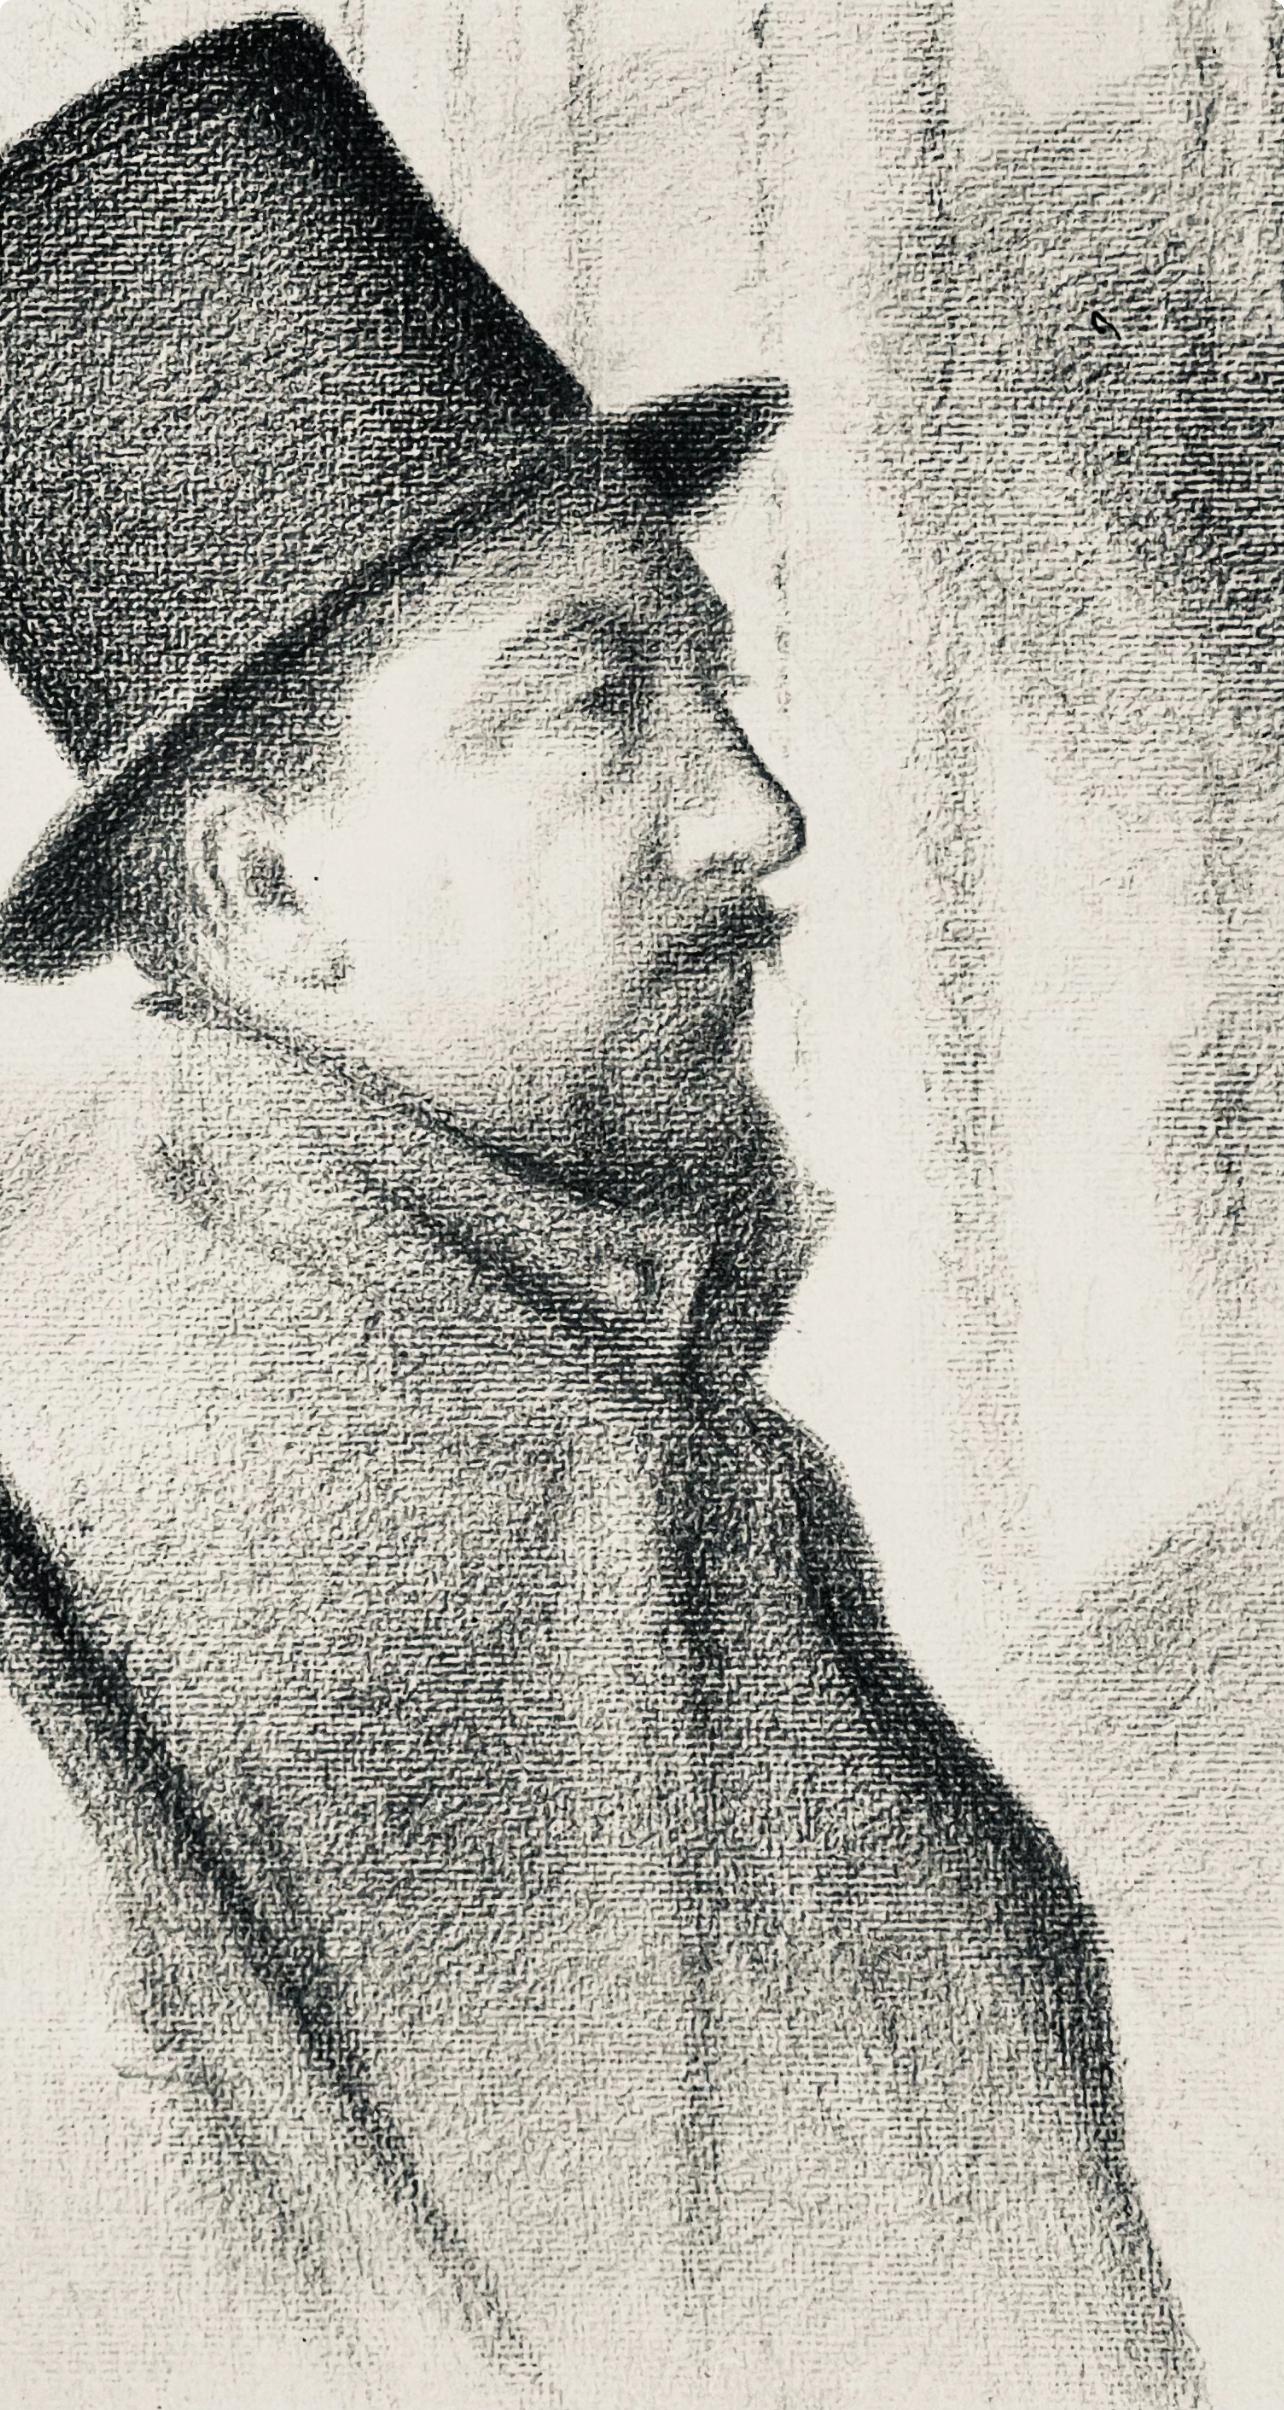 Seurat, Portrait de Paul Signac, Seurat (after) - Impressionist Print by Georges Seurat